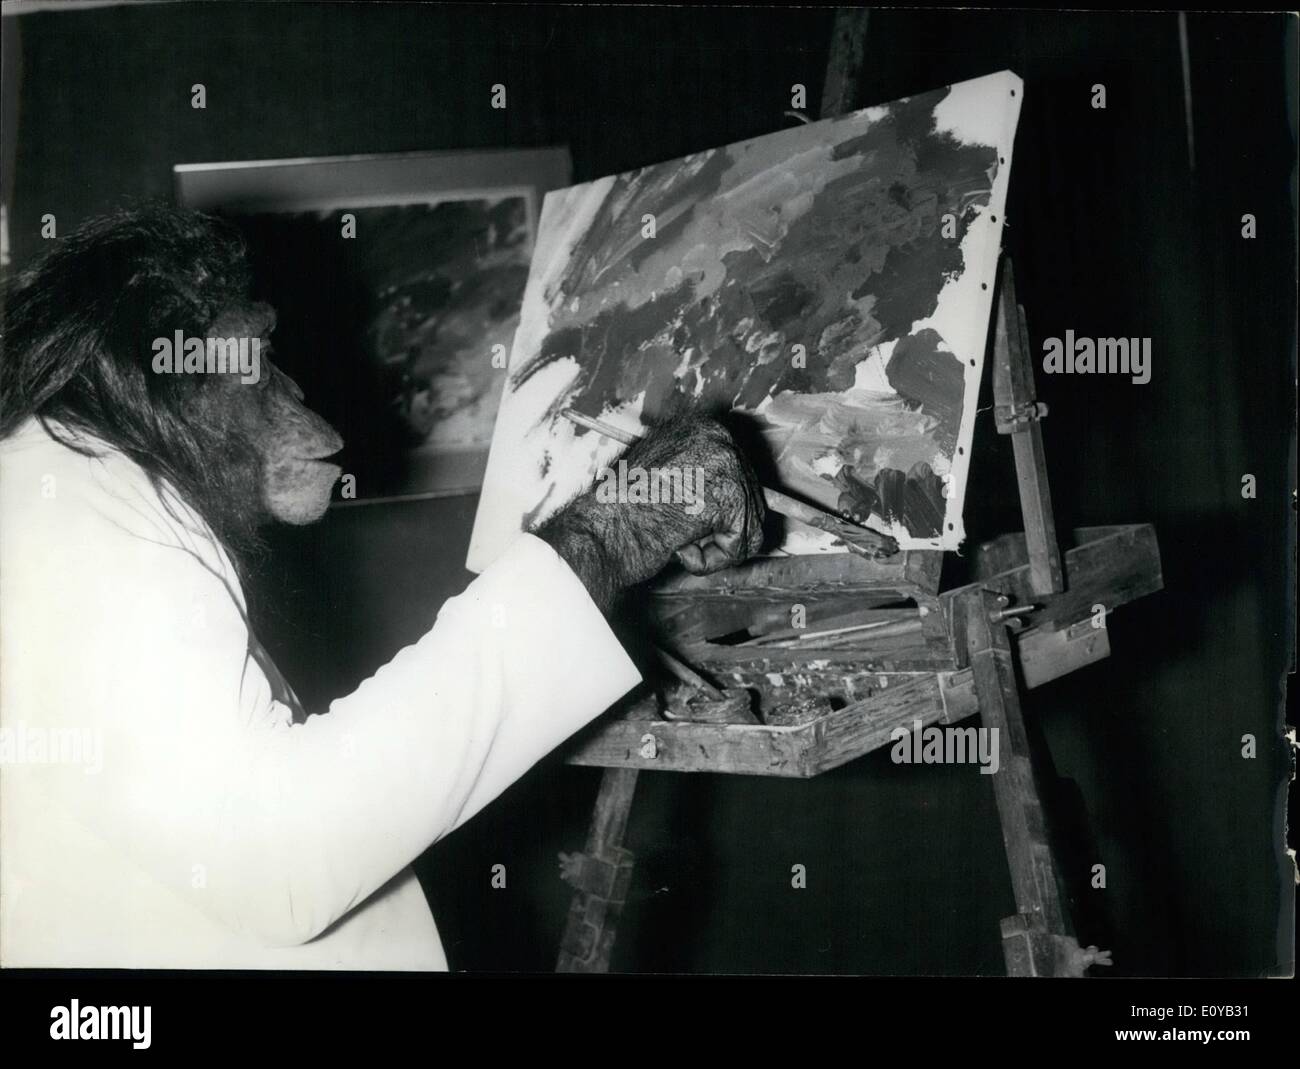 Juillet 07, 1969 - les peintures de Pat des collègues déplaire : Pat, le chimpanzé, peintre, est le premier singe à avoir ses œuvres affichées lors d'une exposition actuellement en cours à Paris. Trois artistes qui ont participé à l'émission de retirer leurs peintures comme une protestation.Photo montre Pat, le chimpanzé peinture mettre la touche finale à l'un de ses derniers ''travaille' Banque D'Images